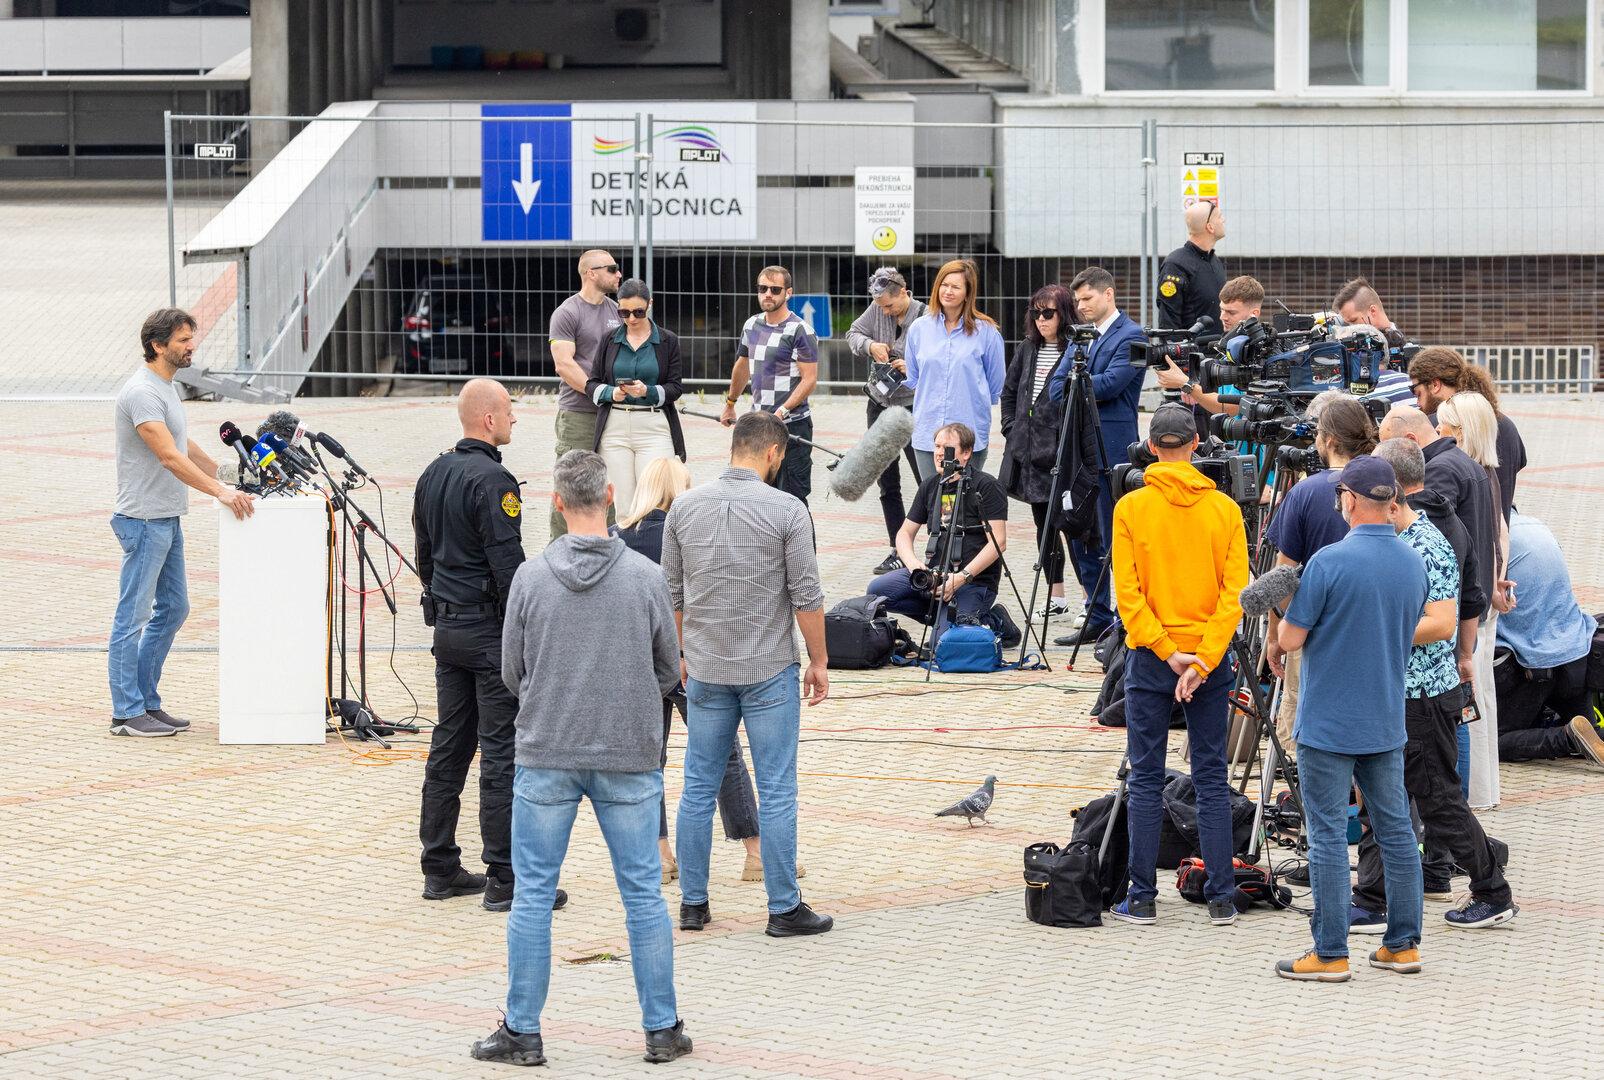 Slowakischer Regierungschef Fico nach Attentat außer Lebensgefahr